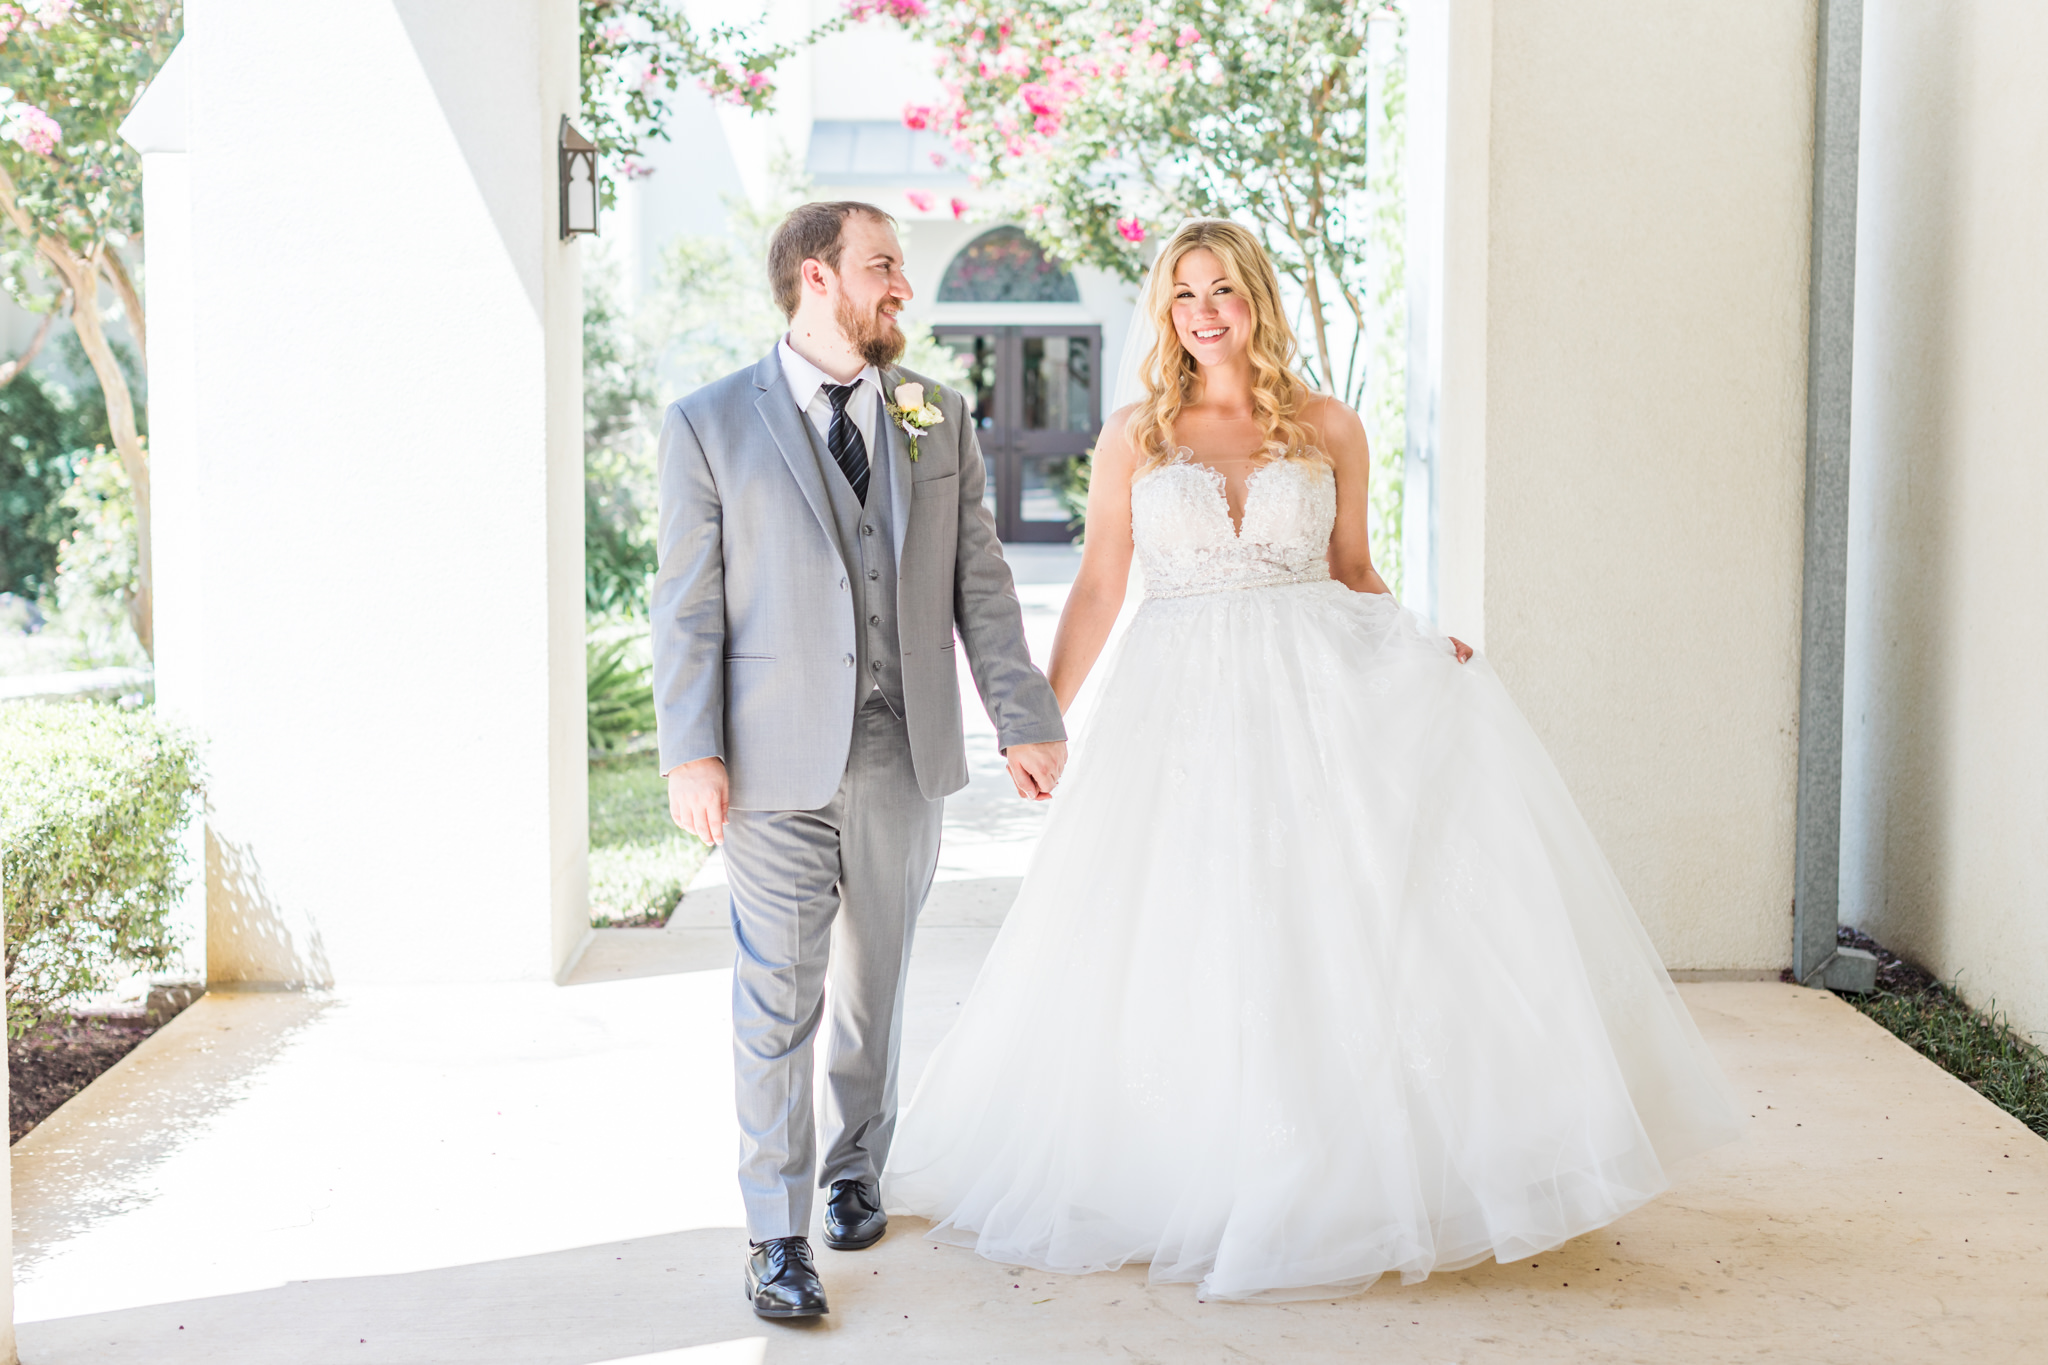 A Mint and Blush Summer Wedding at The Pearl Studio in San Antonio, TX by Dawn Elizabeth Studios, San Antonio Wedding Photographer